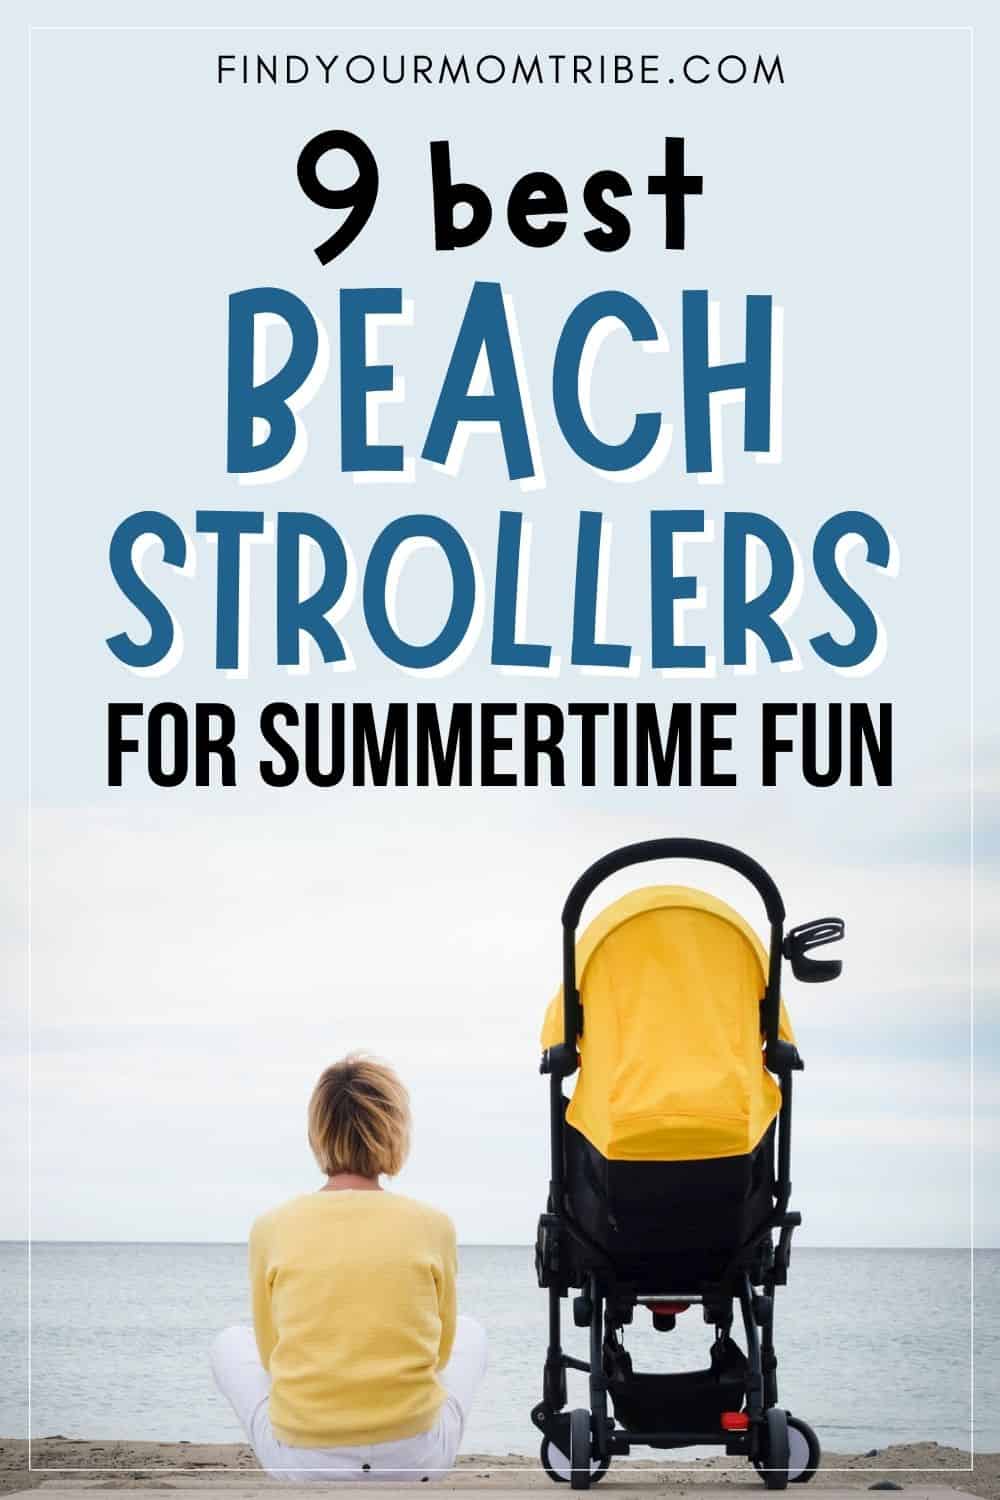 9 Best Beach Strollers For Summertime Pinterest